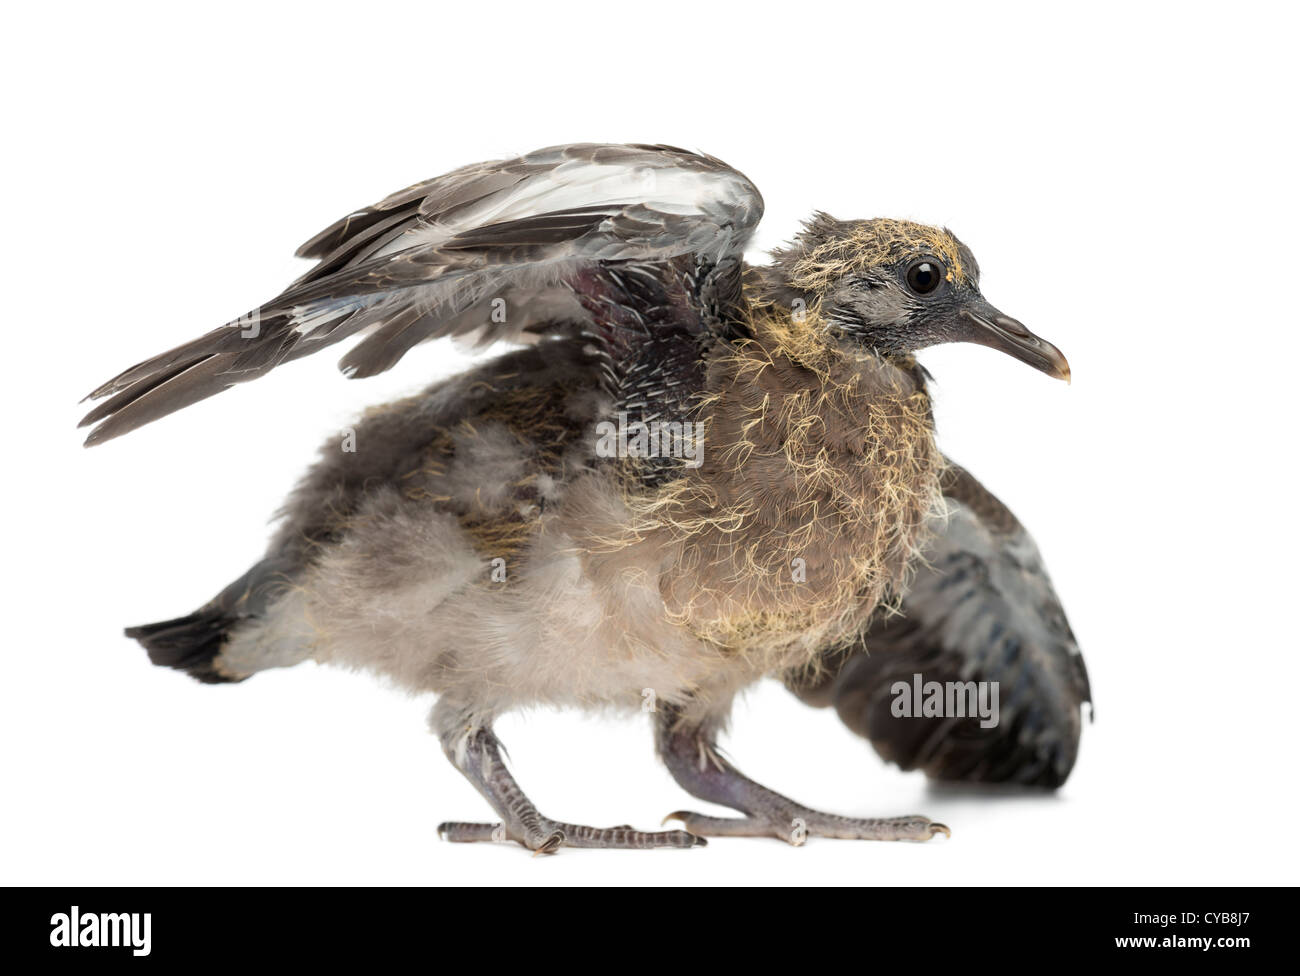 Commune jeune pigeon ramier, Columba palumbus, stretching ailes sur fond blanc Banque D'Images